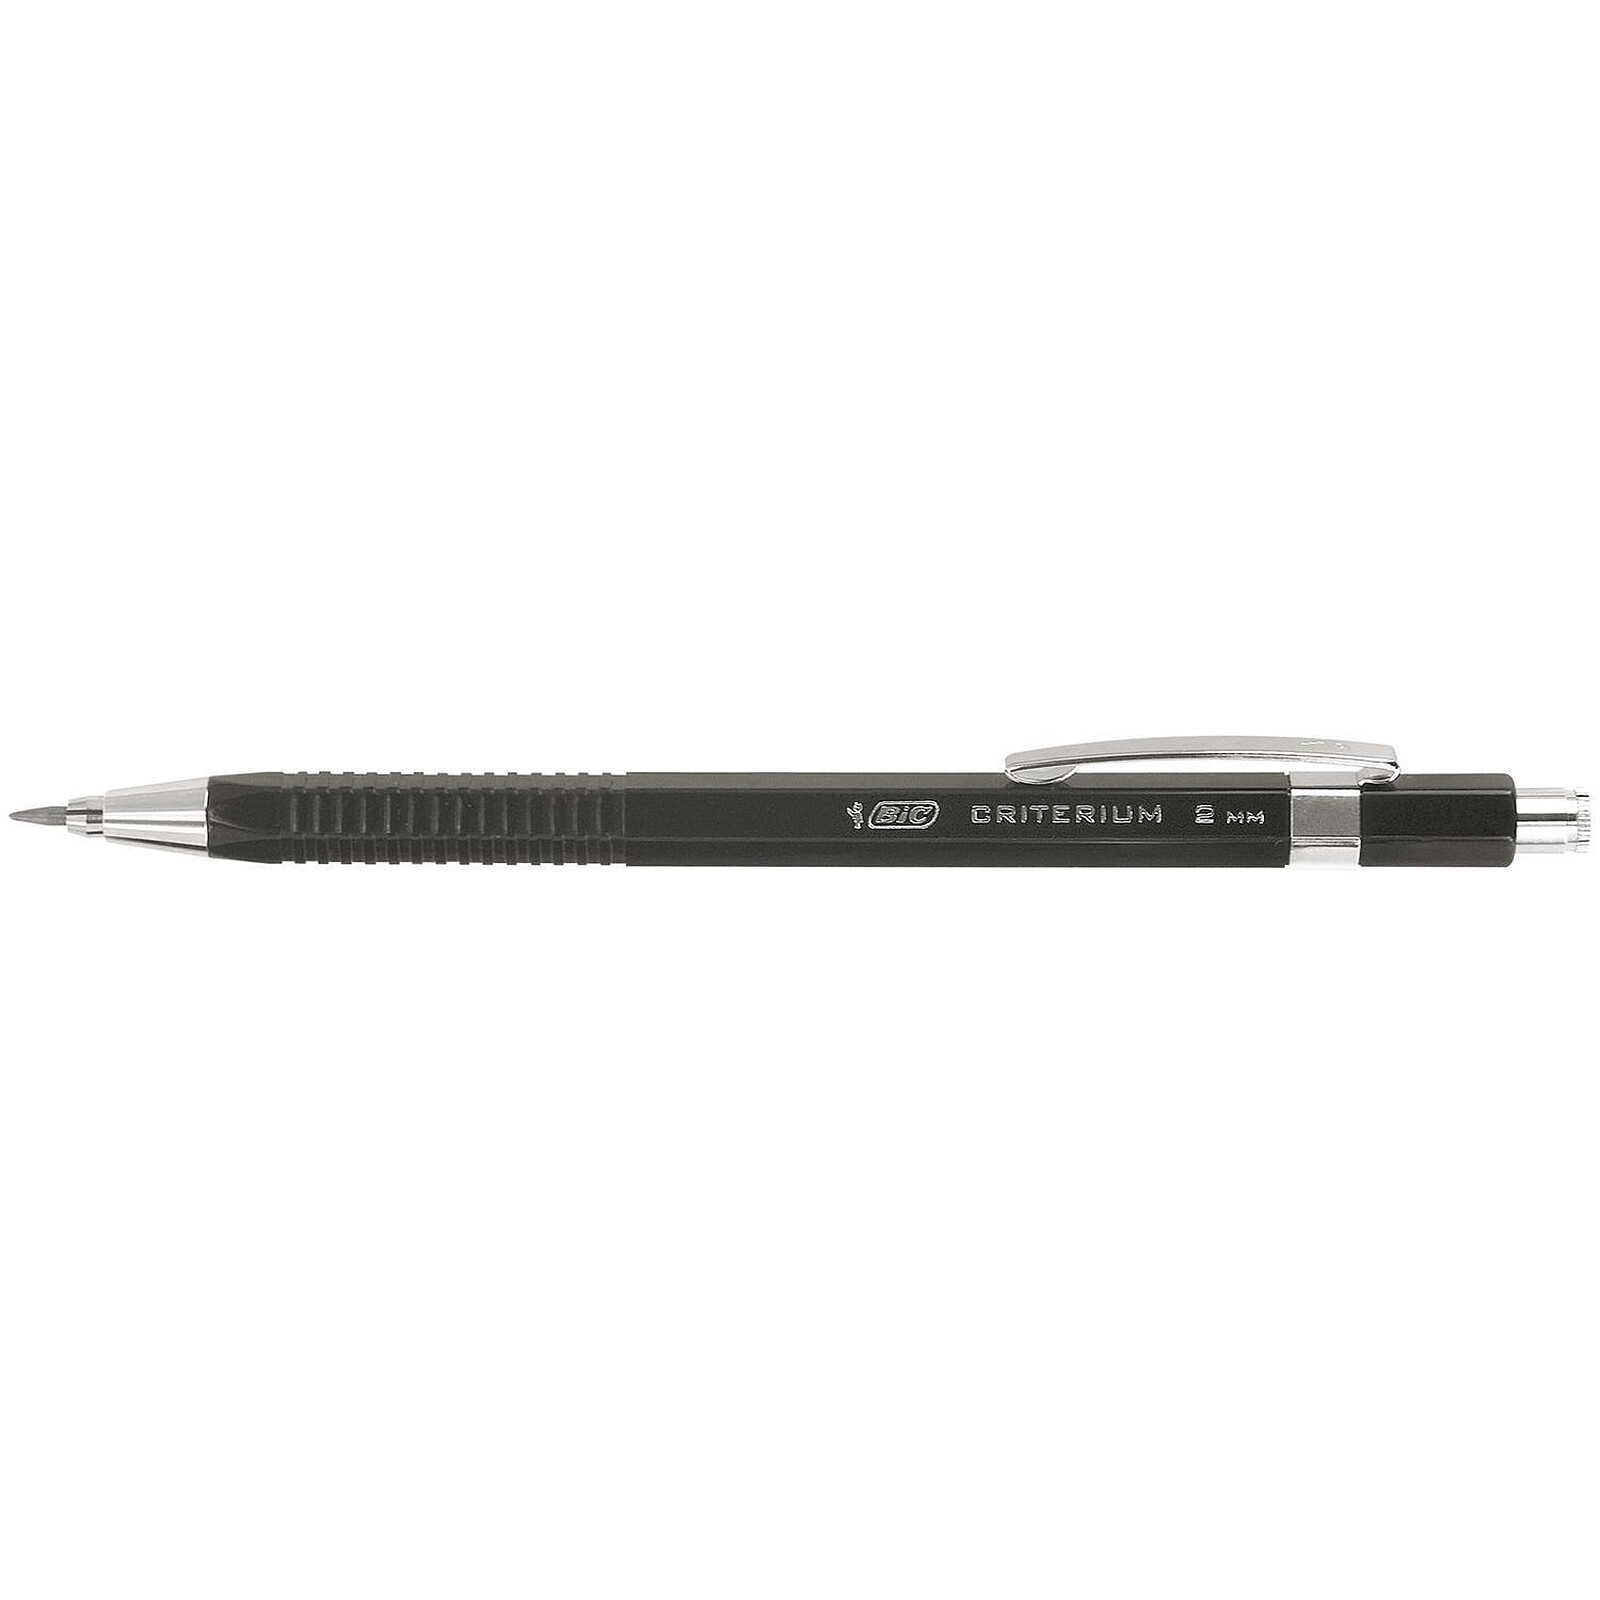 Crayon criterium portemines HB Noir avec recharge BIC : le crayon